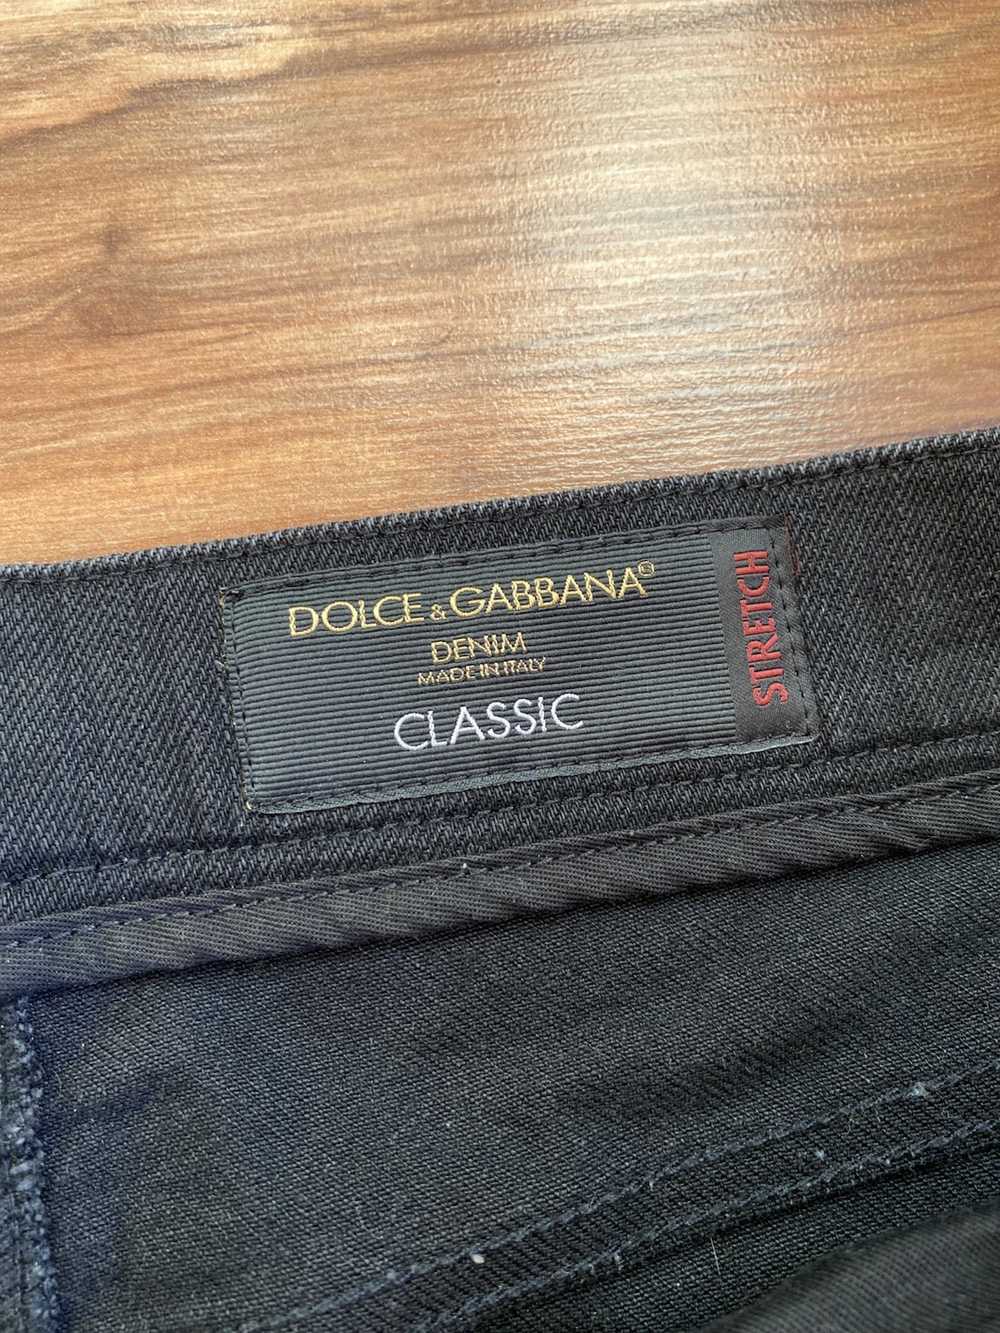 Dolce & Gabbana Denim dolce and gabana Classic - image 3